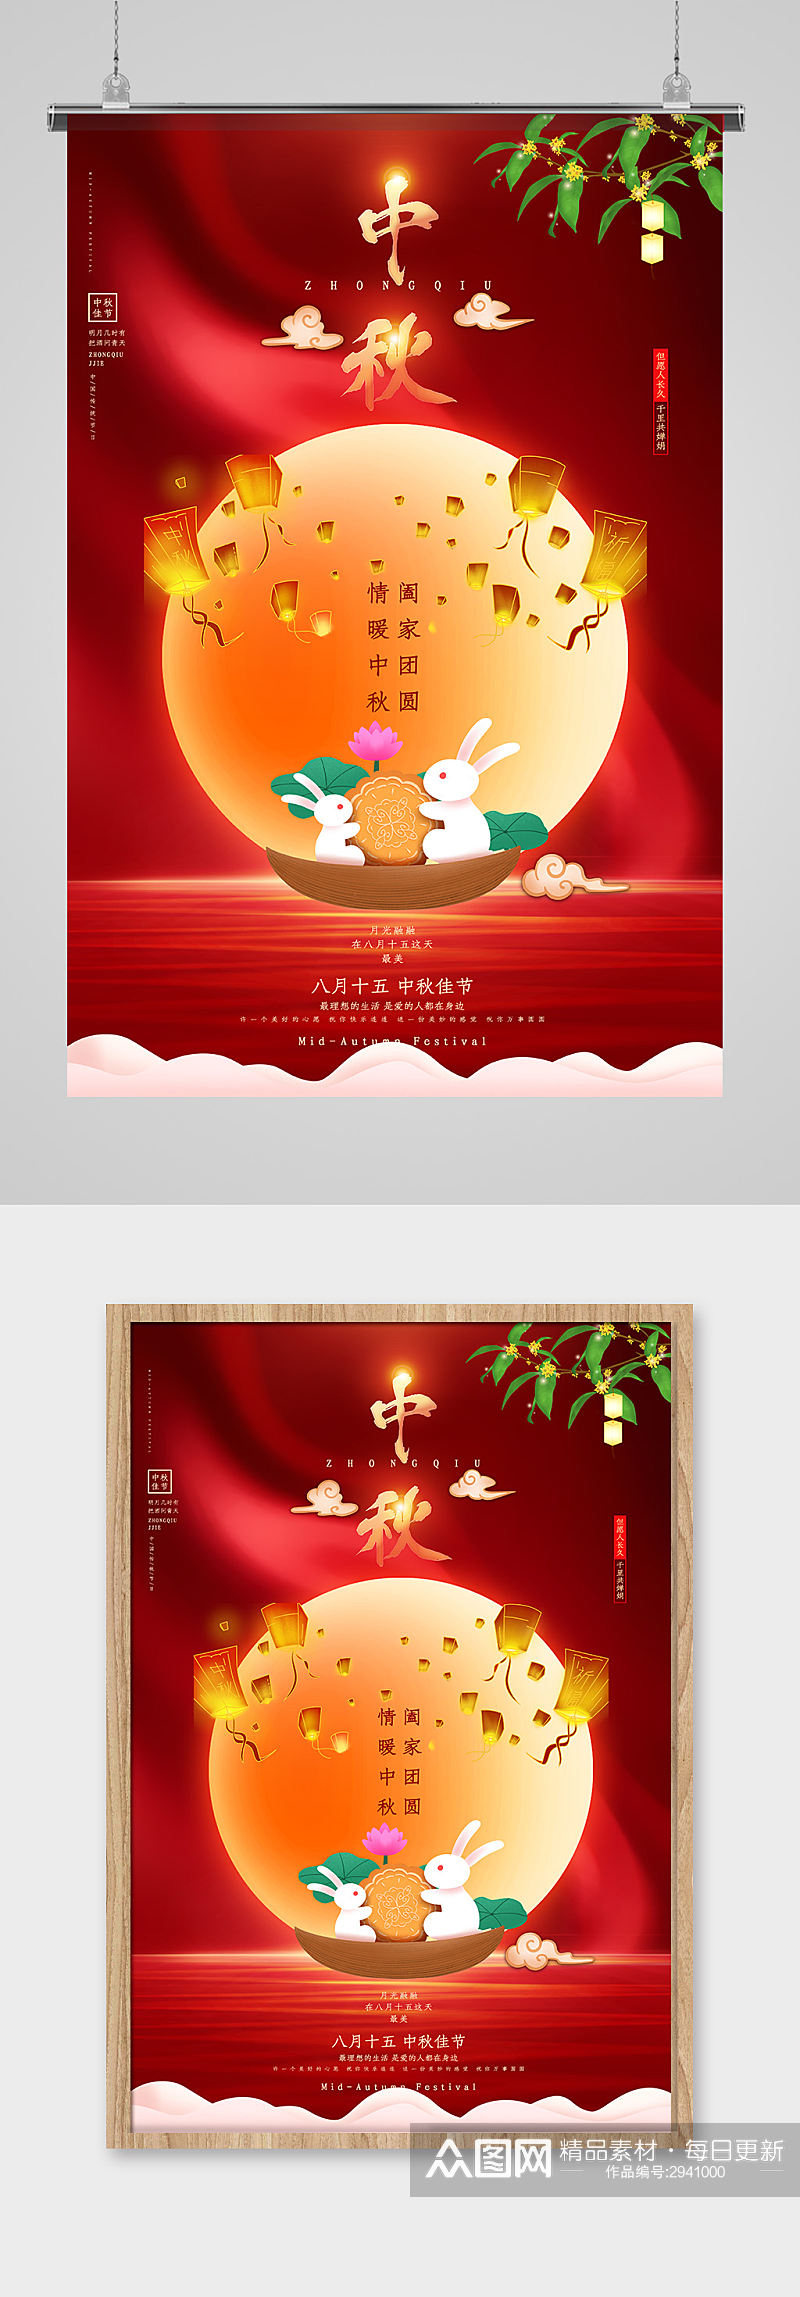 红色喜庆中秋节海报设计素材